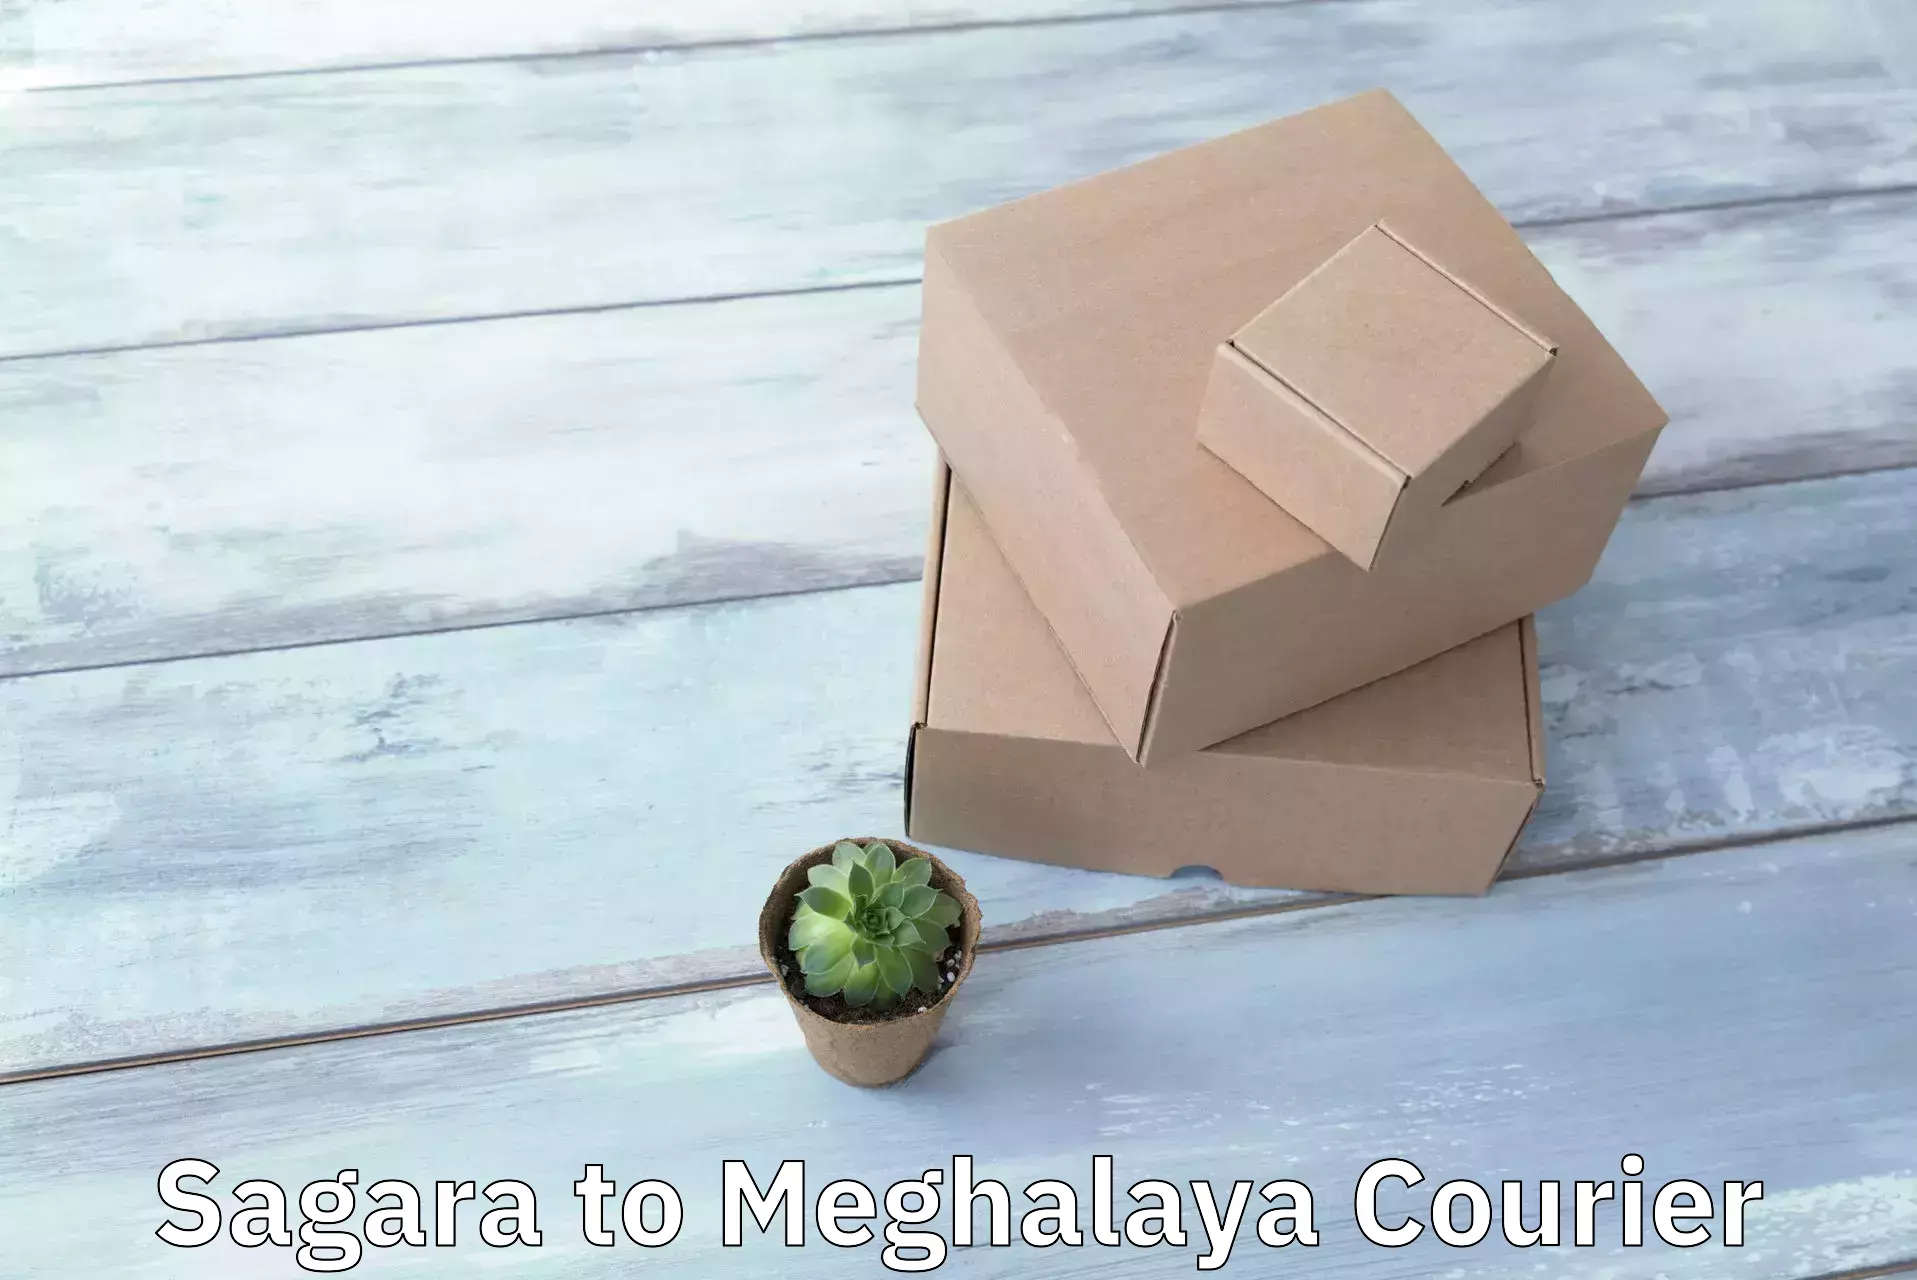 Large package courier Sagara to Phulbari